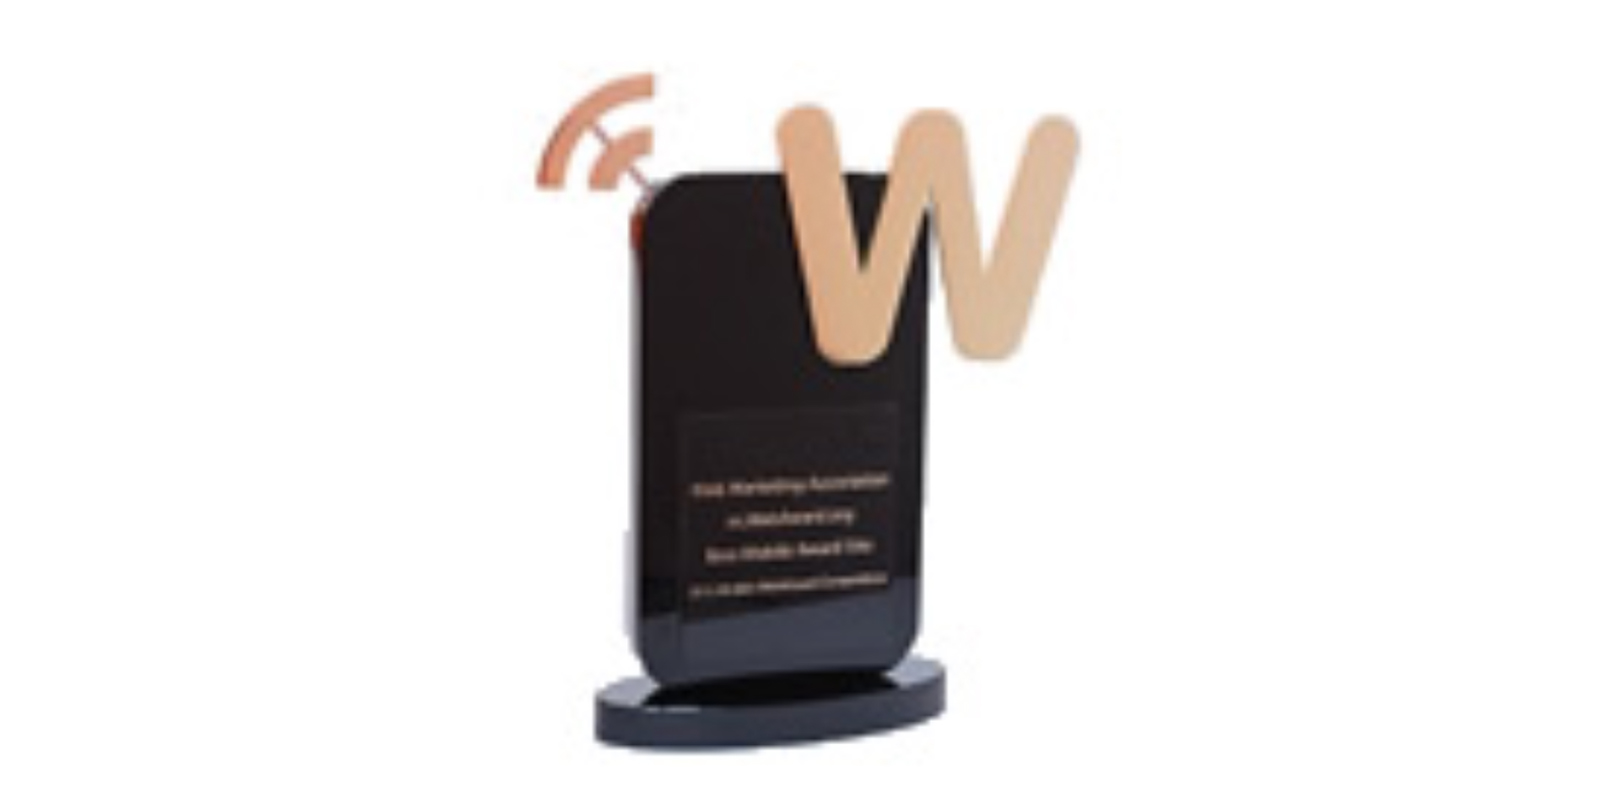 Reggie® Education wins at MobileWebAwards